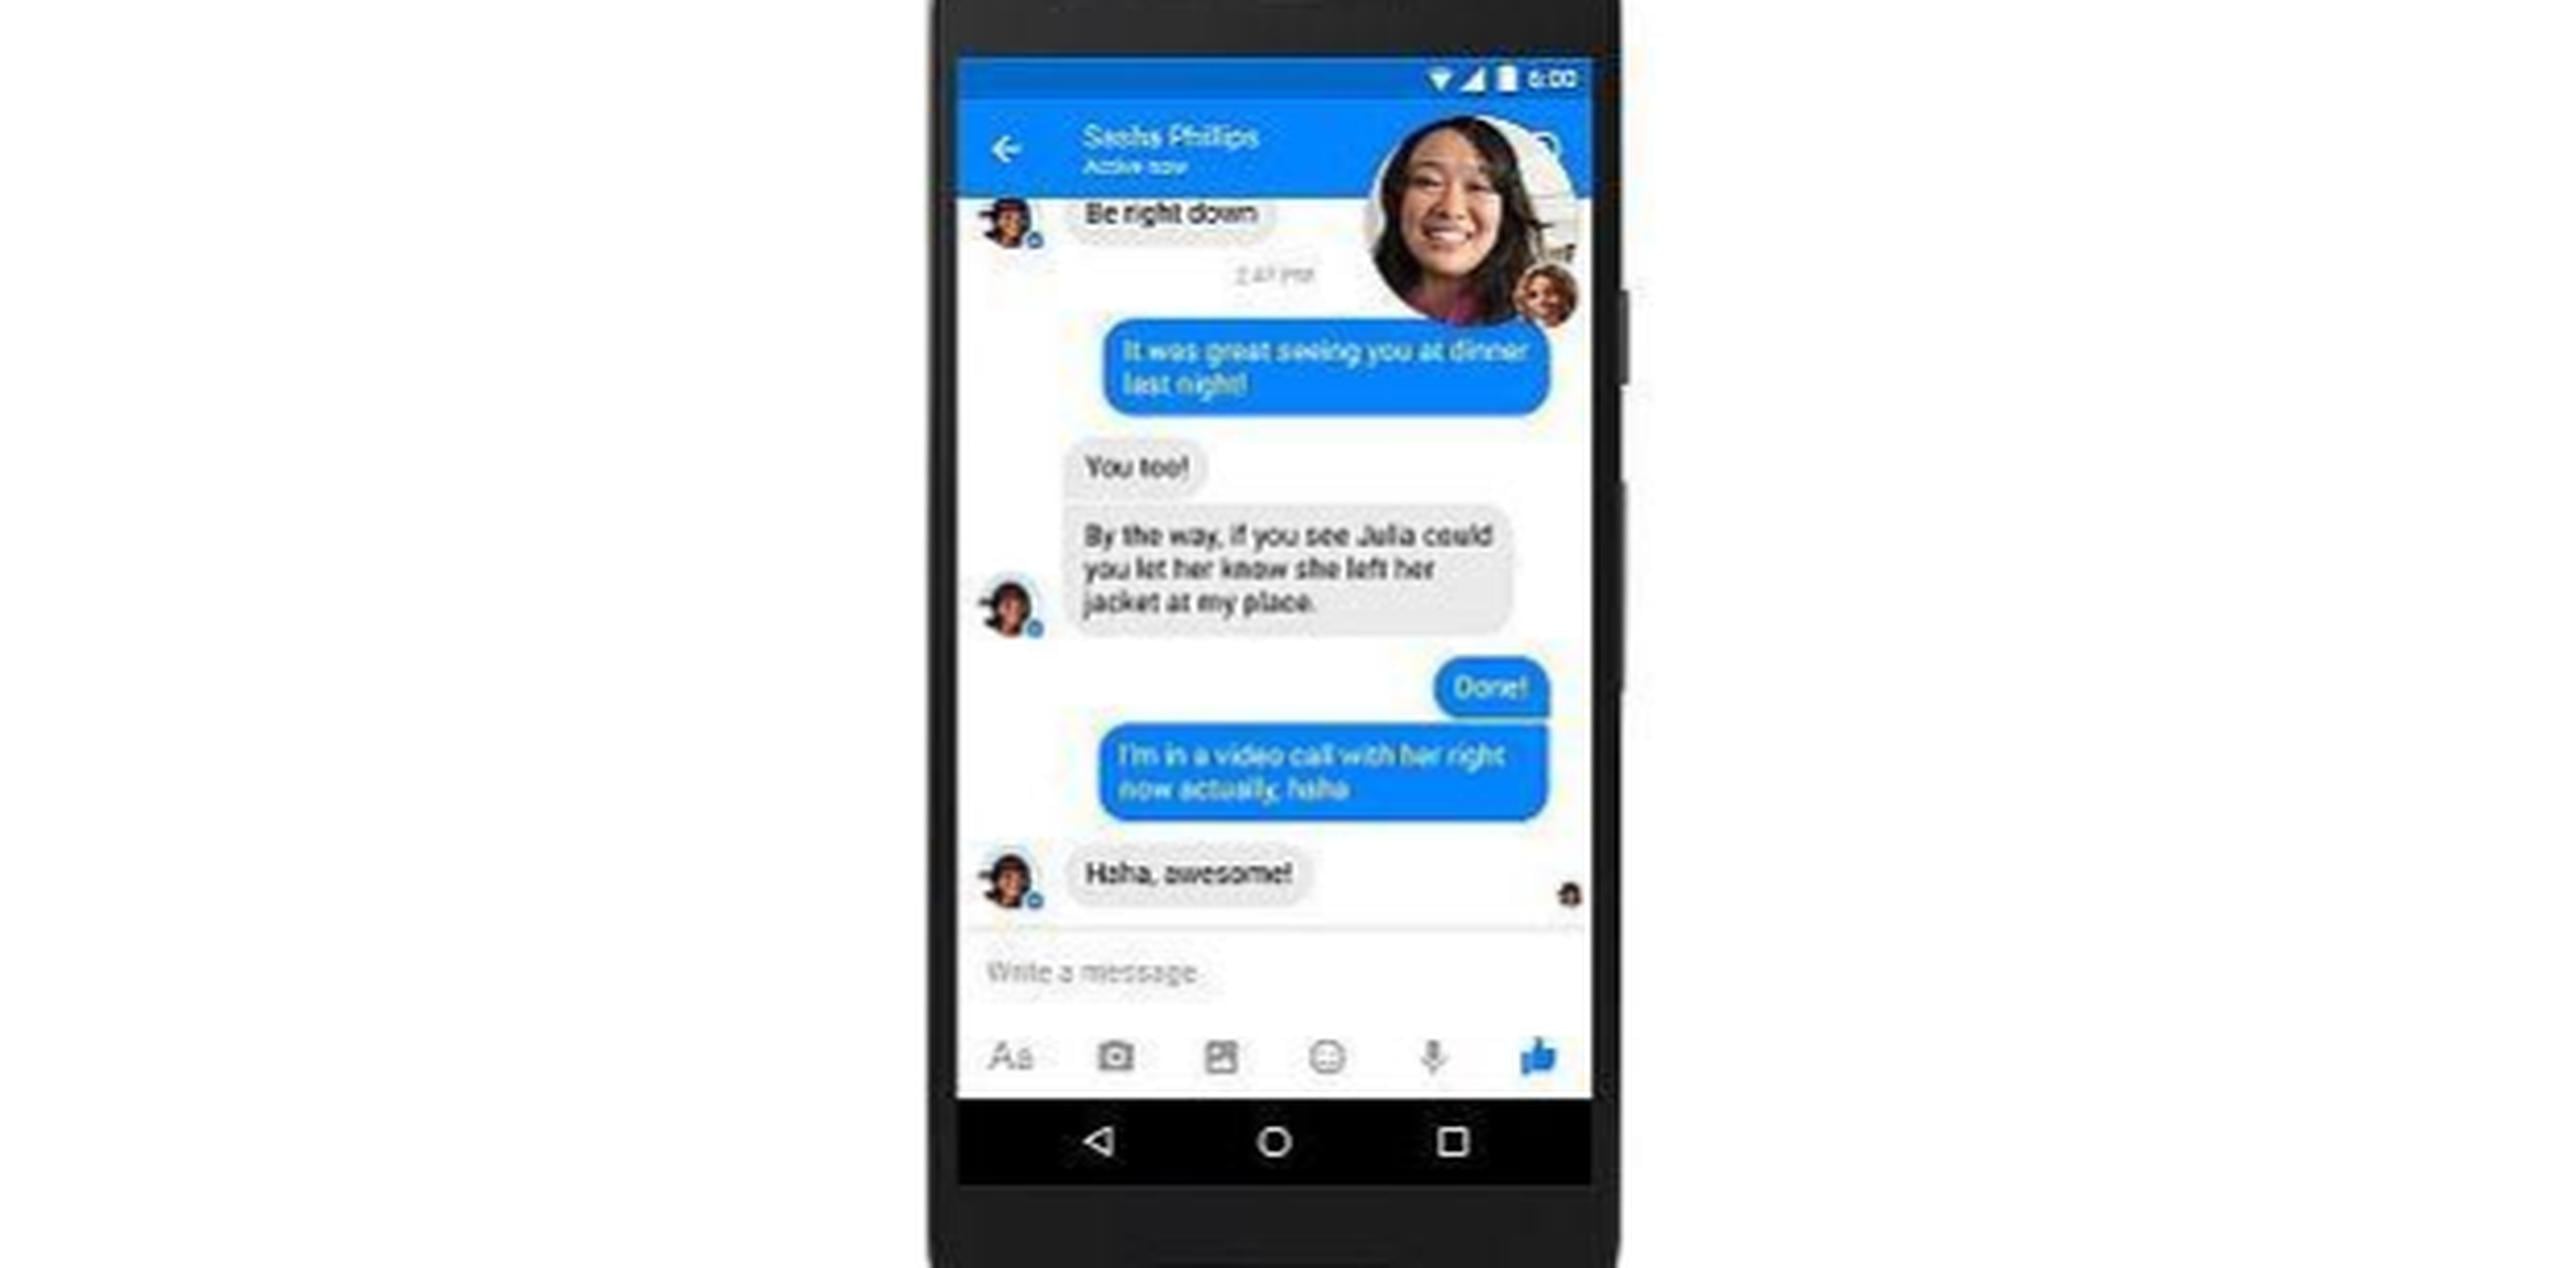 Se informó que Facebook obliga la actualización de Messenger para mejorar la experiencia del usuario. (Foto: Facebook)
